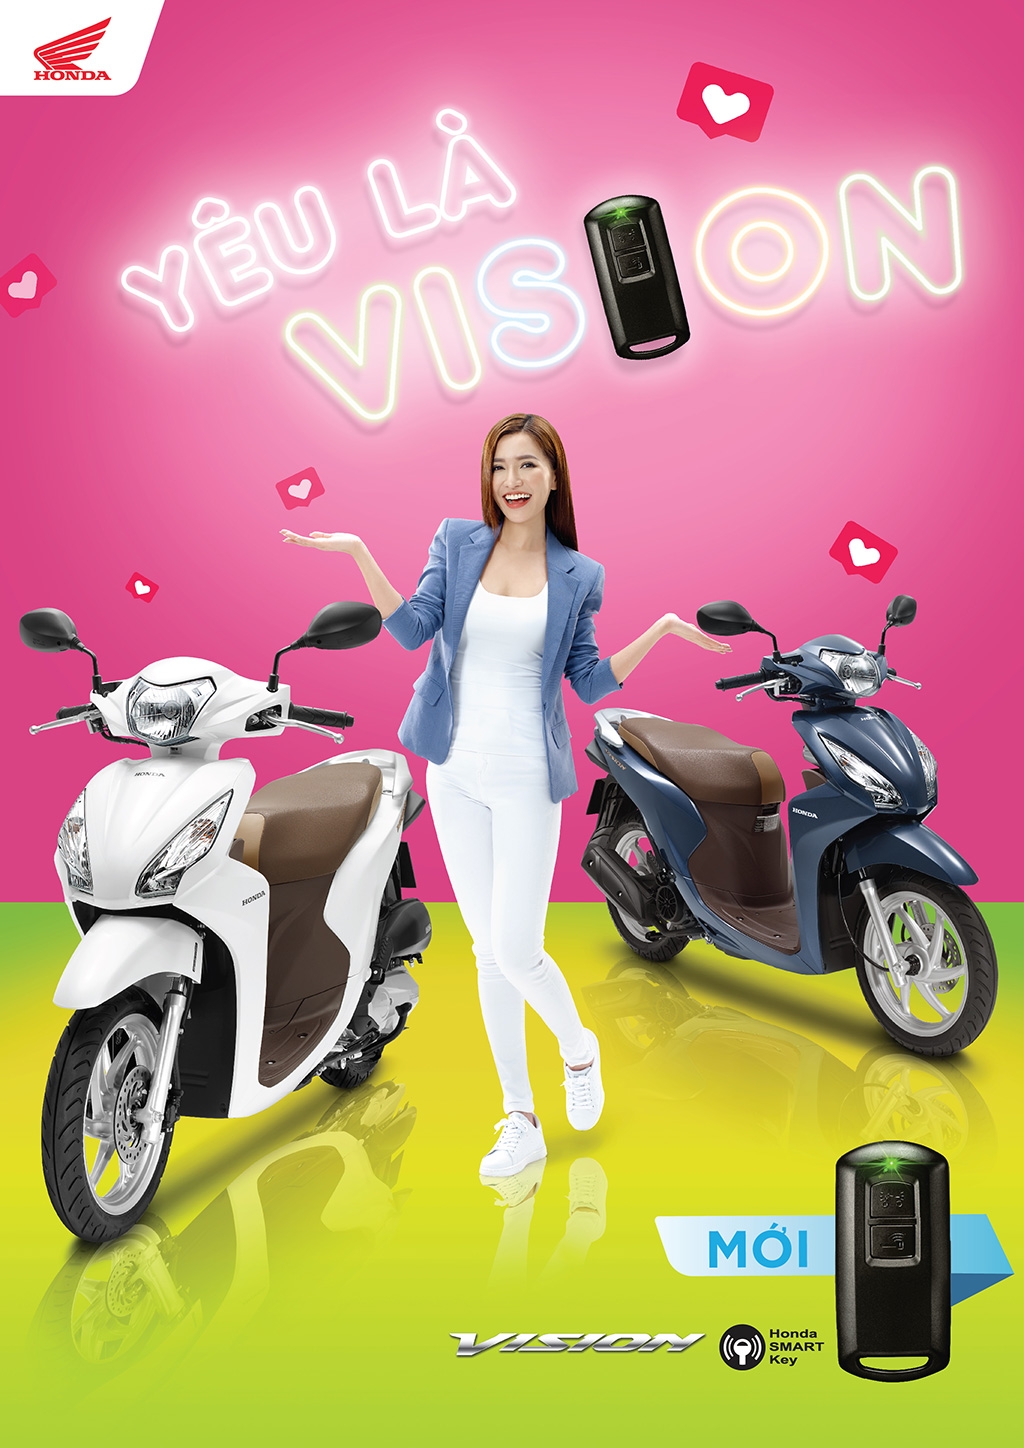 Honda Vision smartkey 2019 ra mắt, giá tăng 1,5 triệu đồng